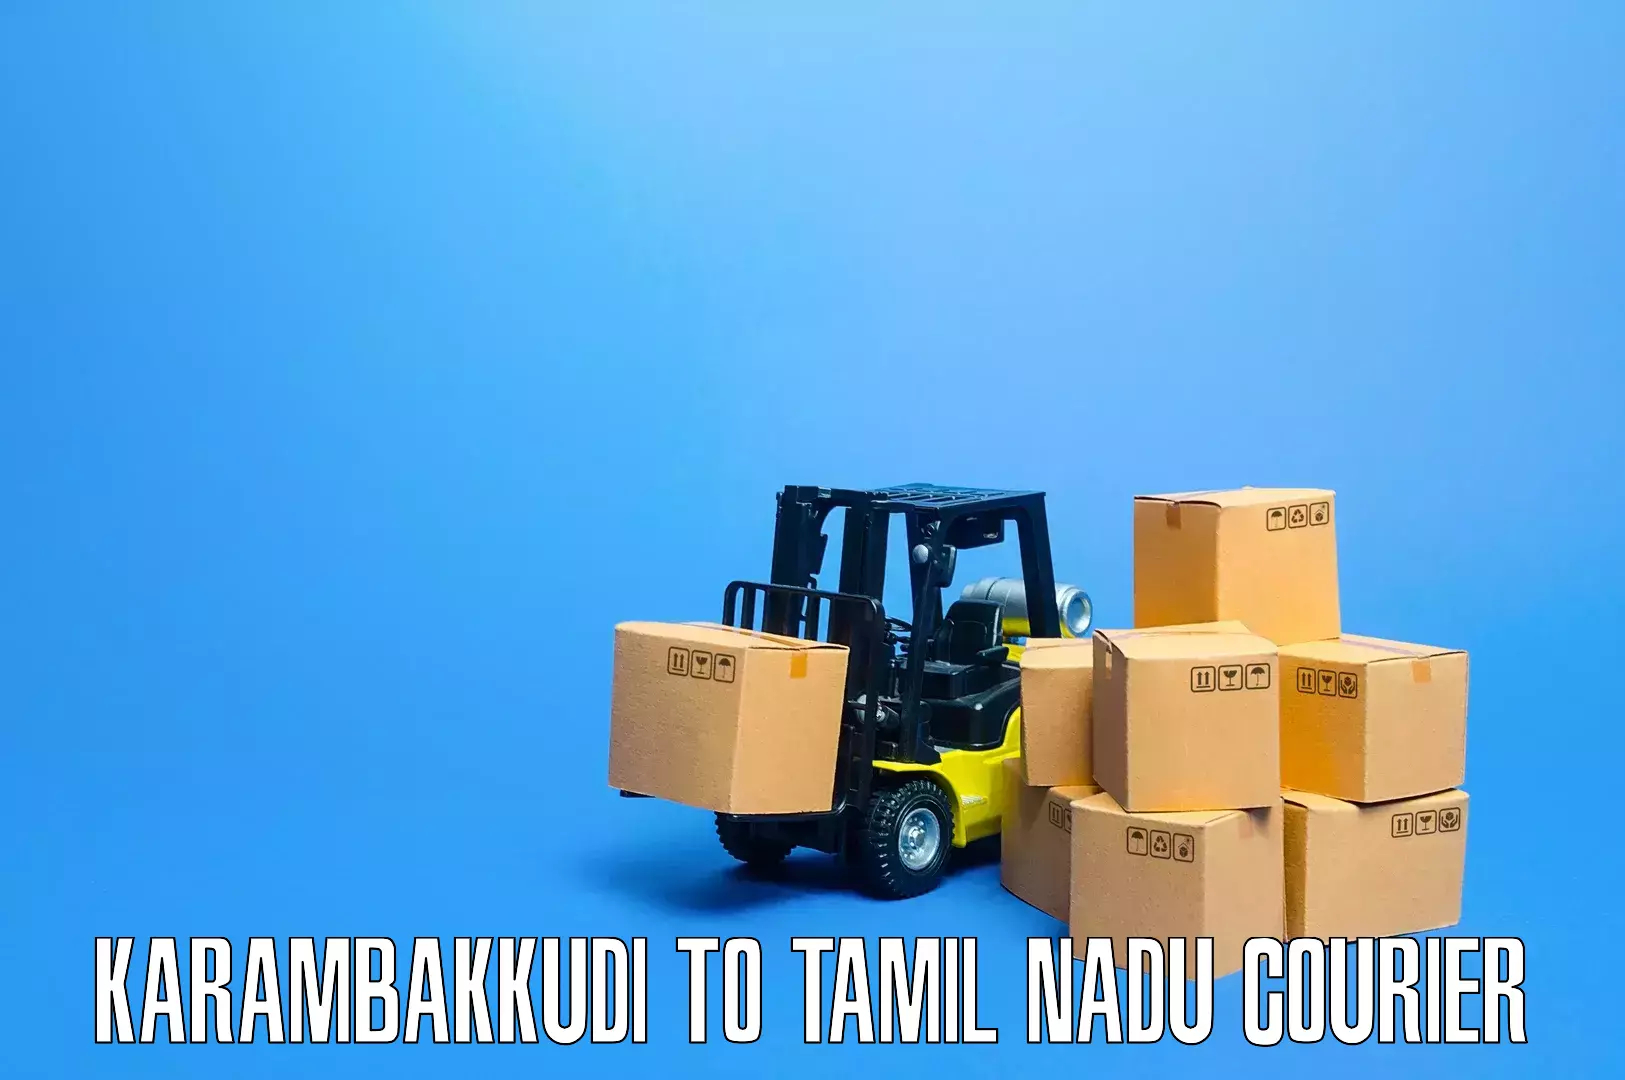 Expert relocation solutions Karambakkudi to Tirunelveli